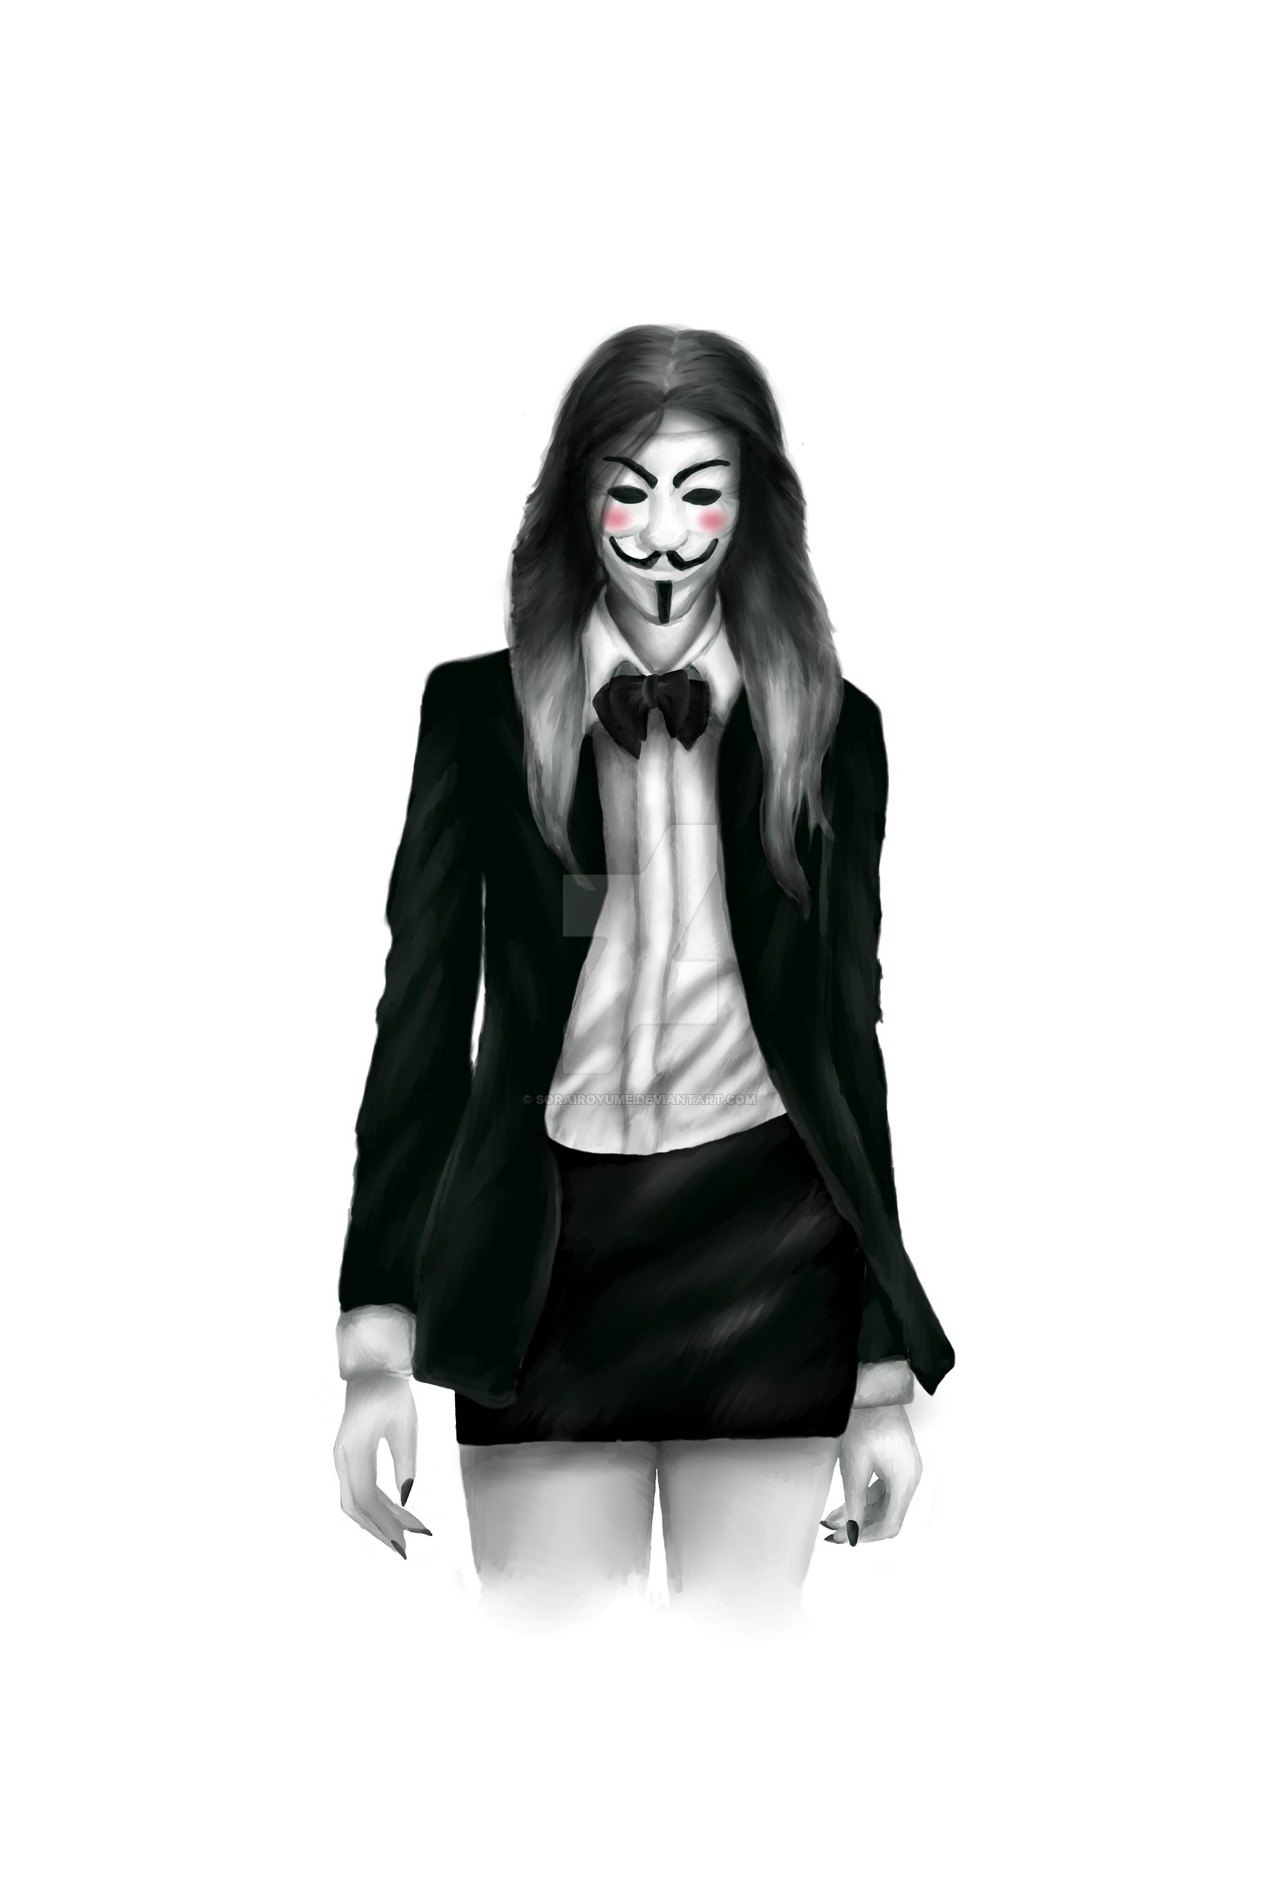 Девочка в маске Анонимуса арт